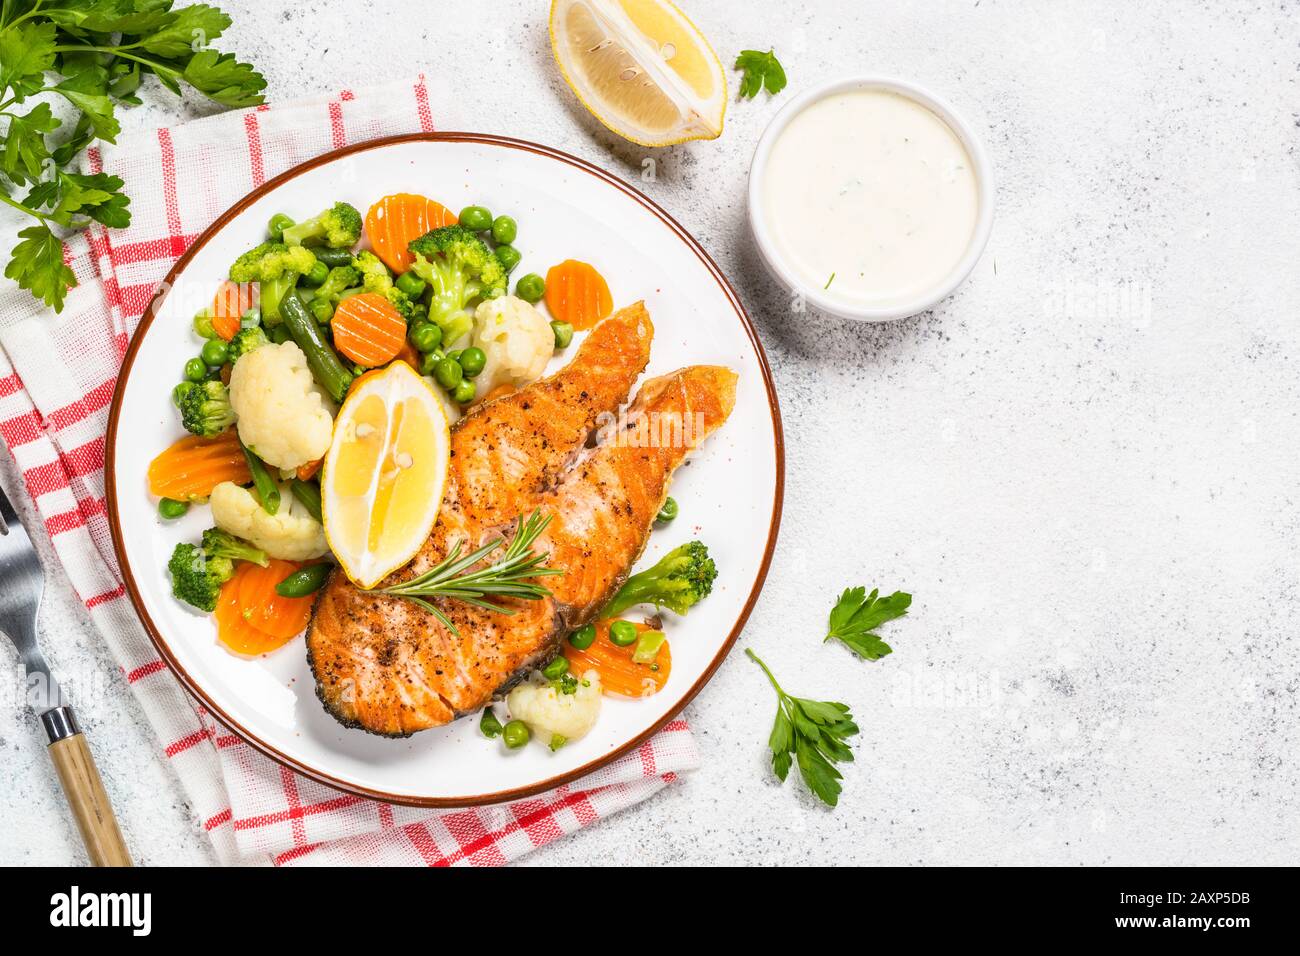 Gegrillter Lachs Fisch Steak mit Gemüse auf Weiß. Stockfoto